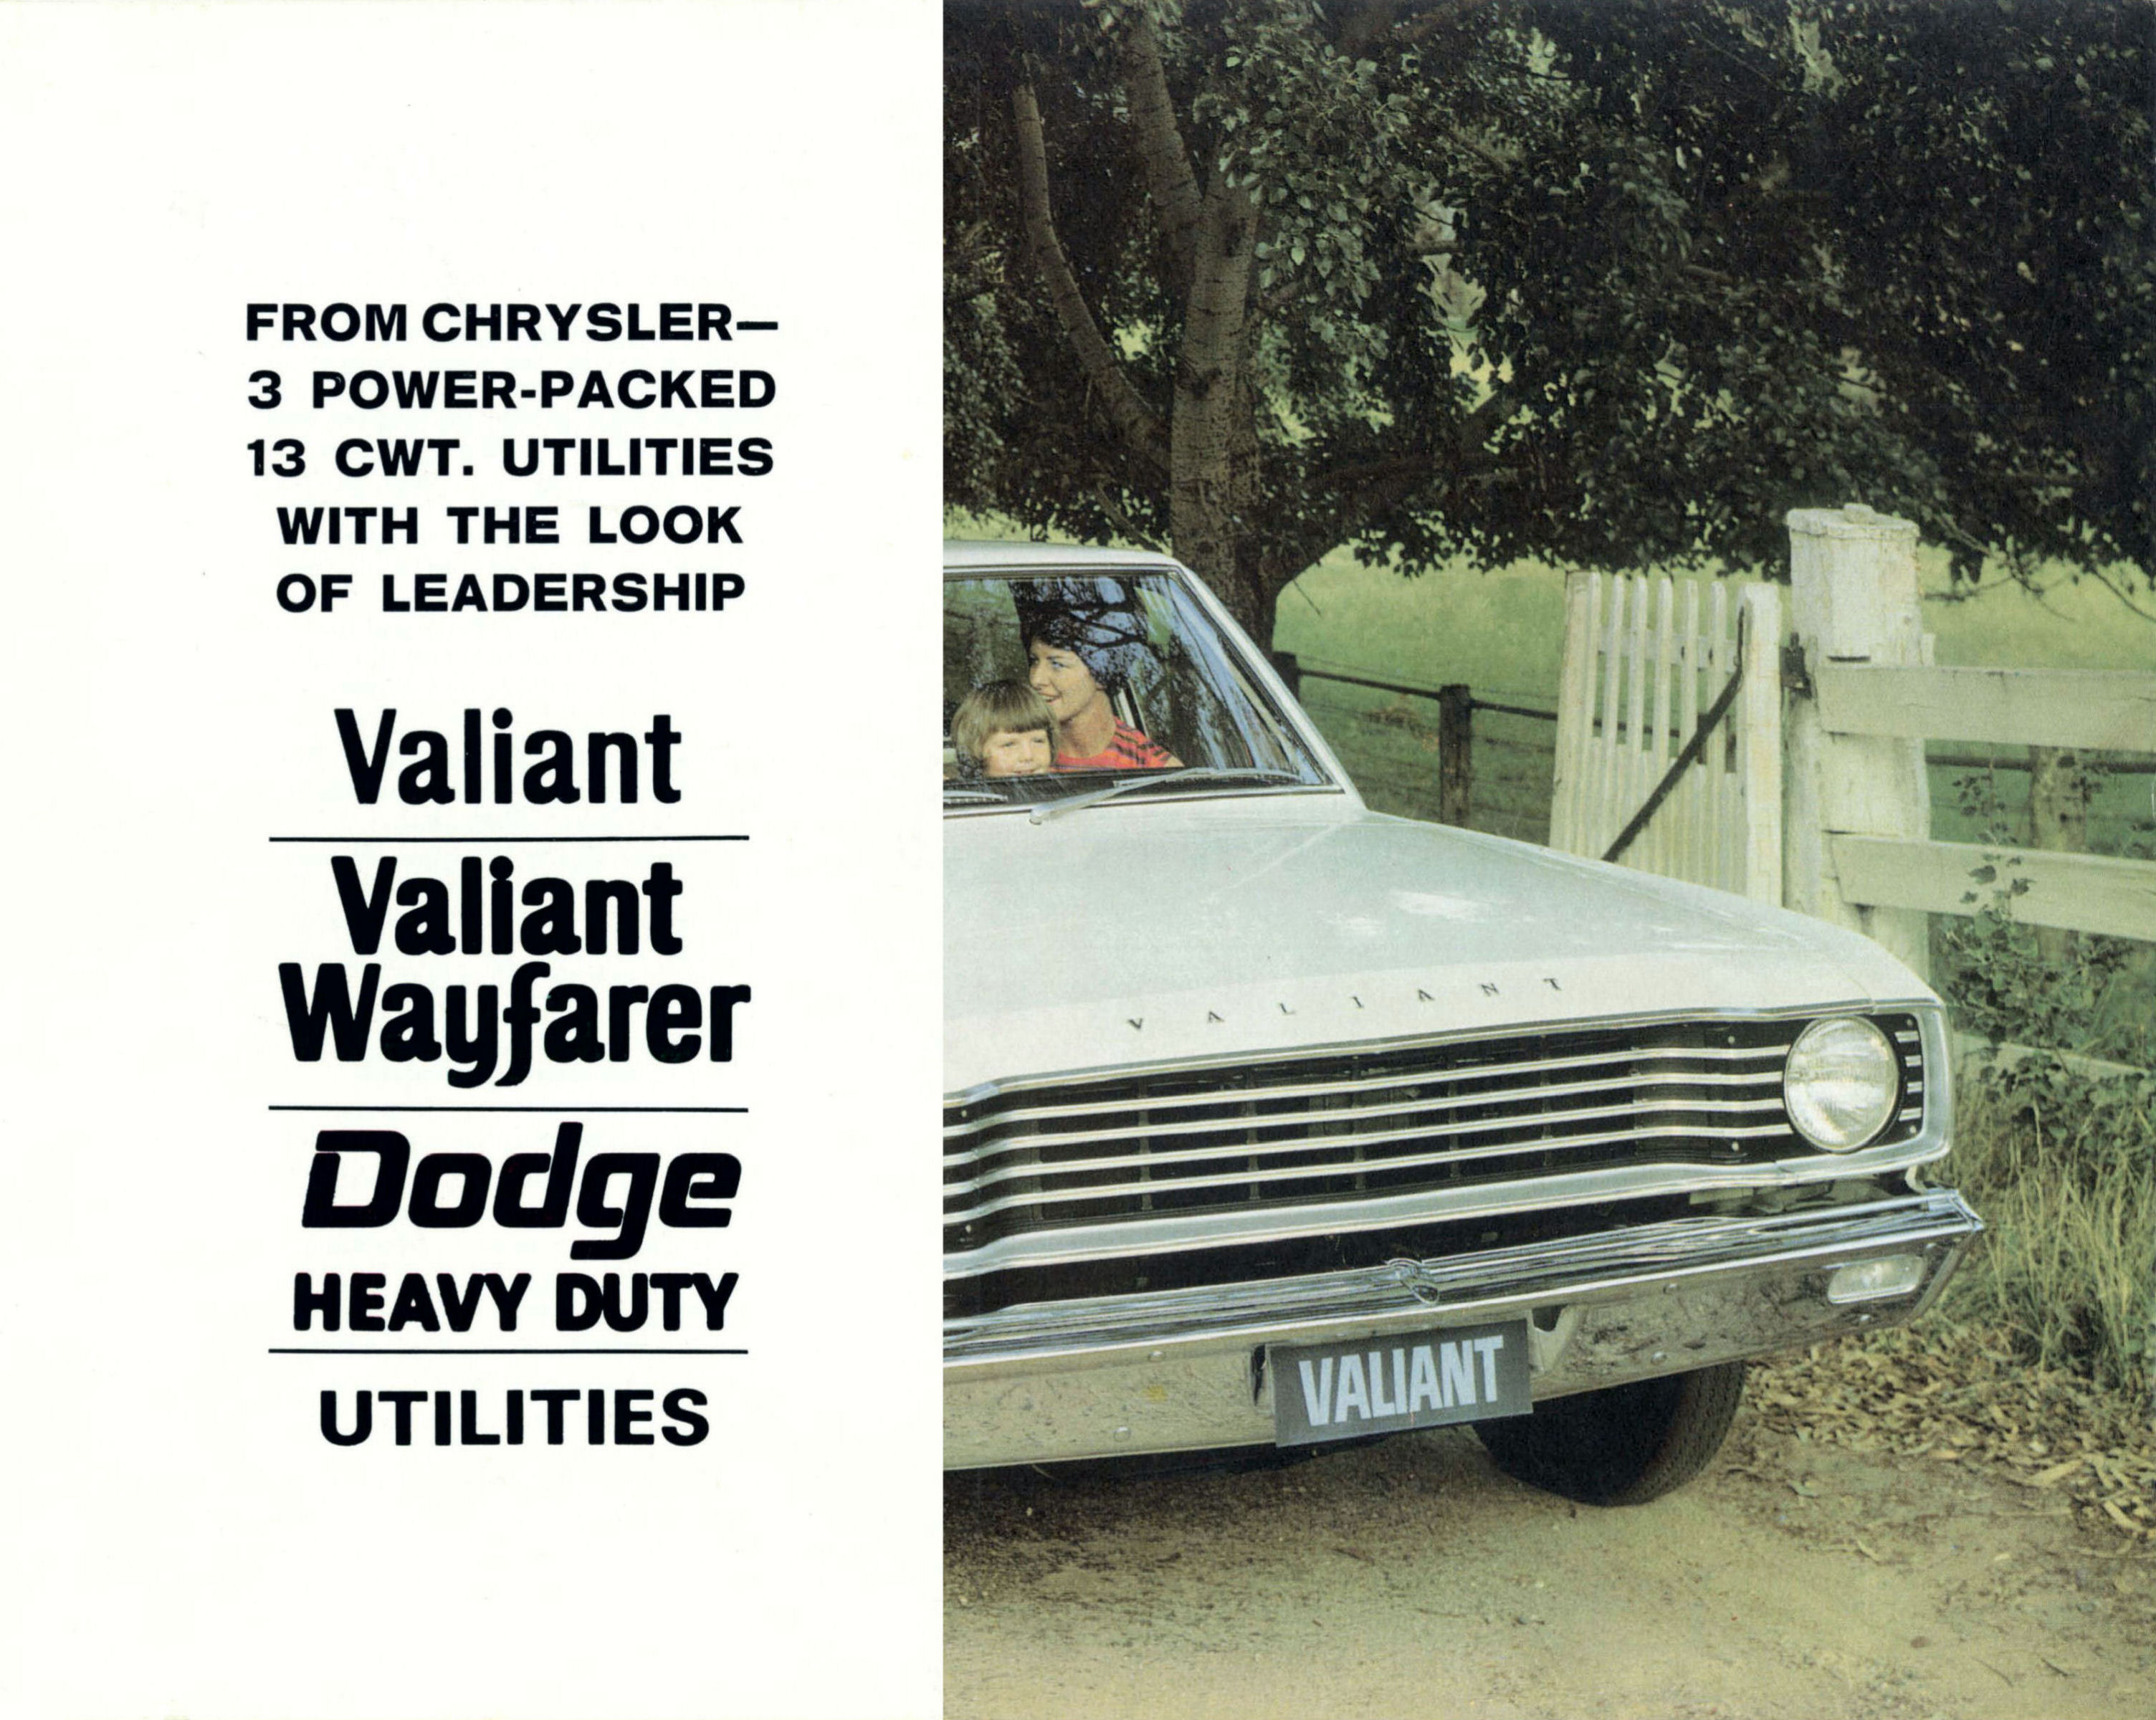 1967_Chrysler_VE_Valiant_Utes-01